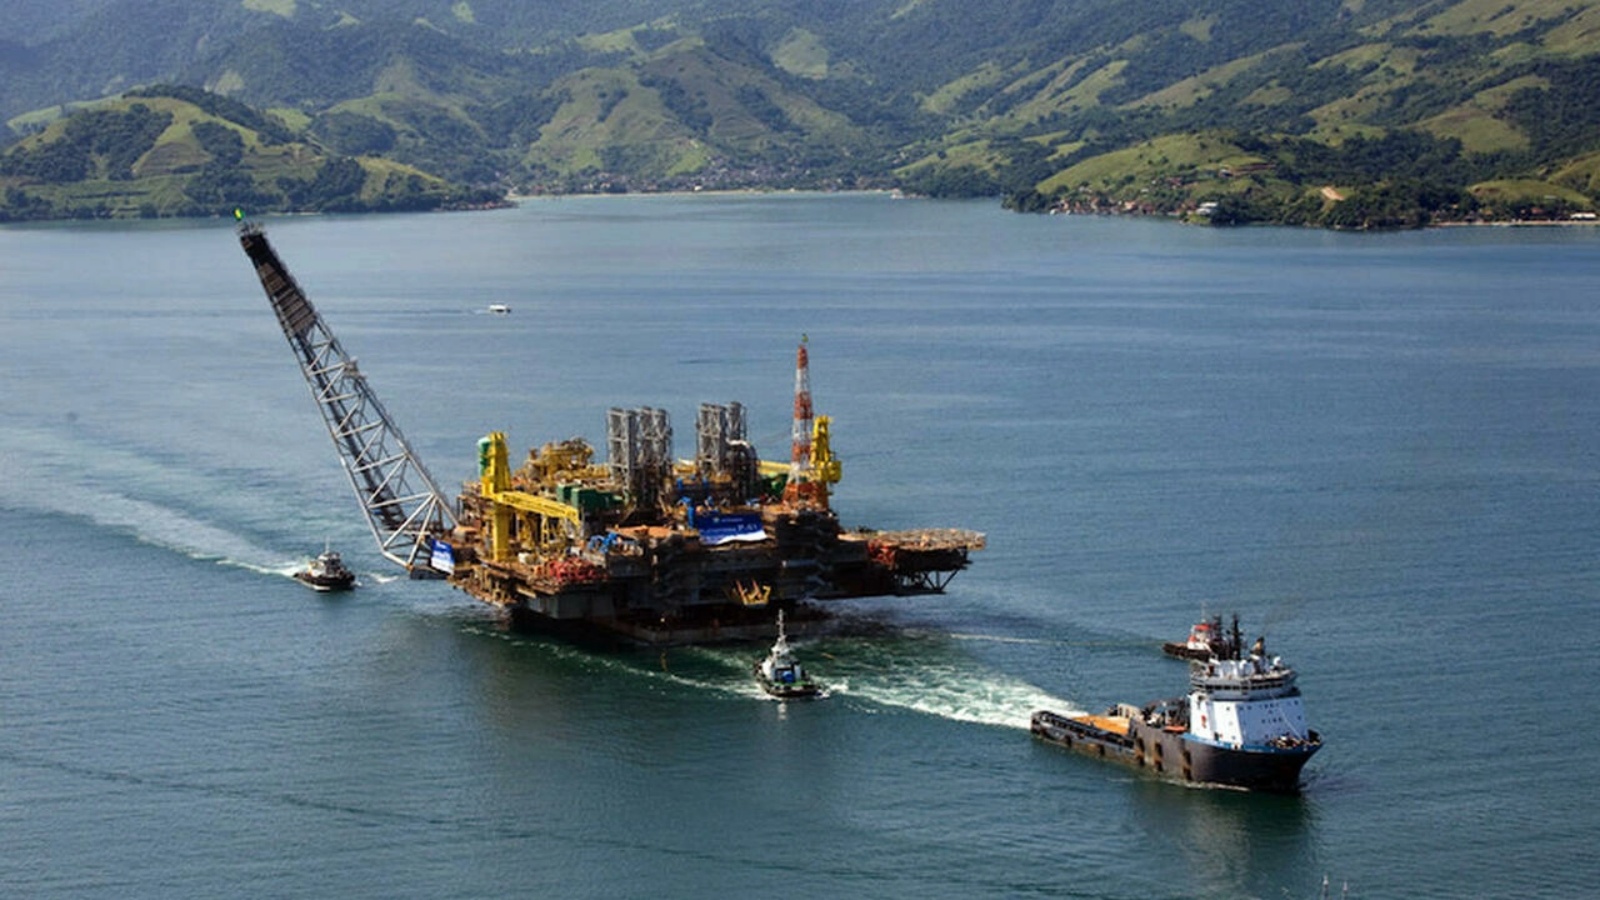 منصة نفطية أوفشور لشركة بتروبراس البرازيلية في أنغرا دوس ريس على مسافة 180 كلم جنوب ريو دي جانيرو، في صورة تعود إلى 21 أغسطس 2008